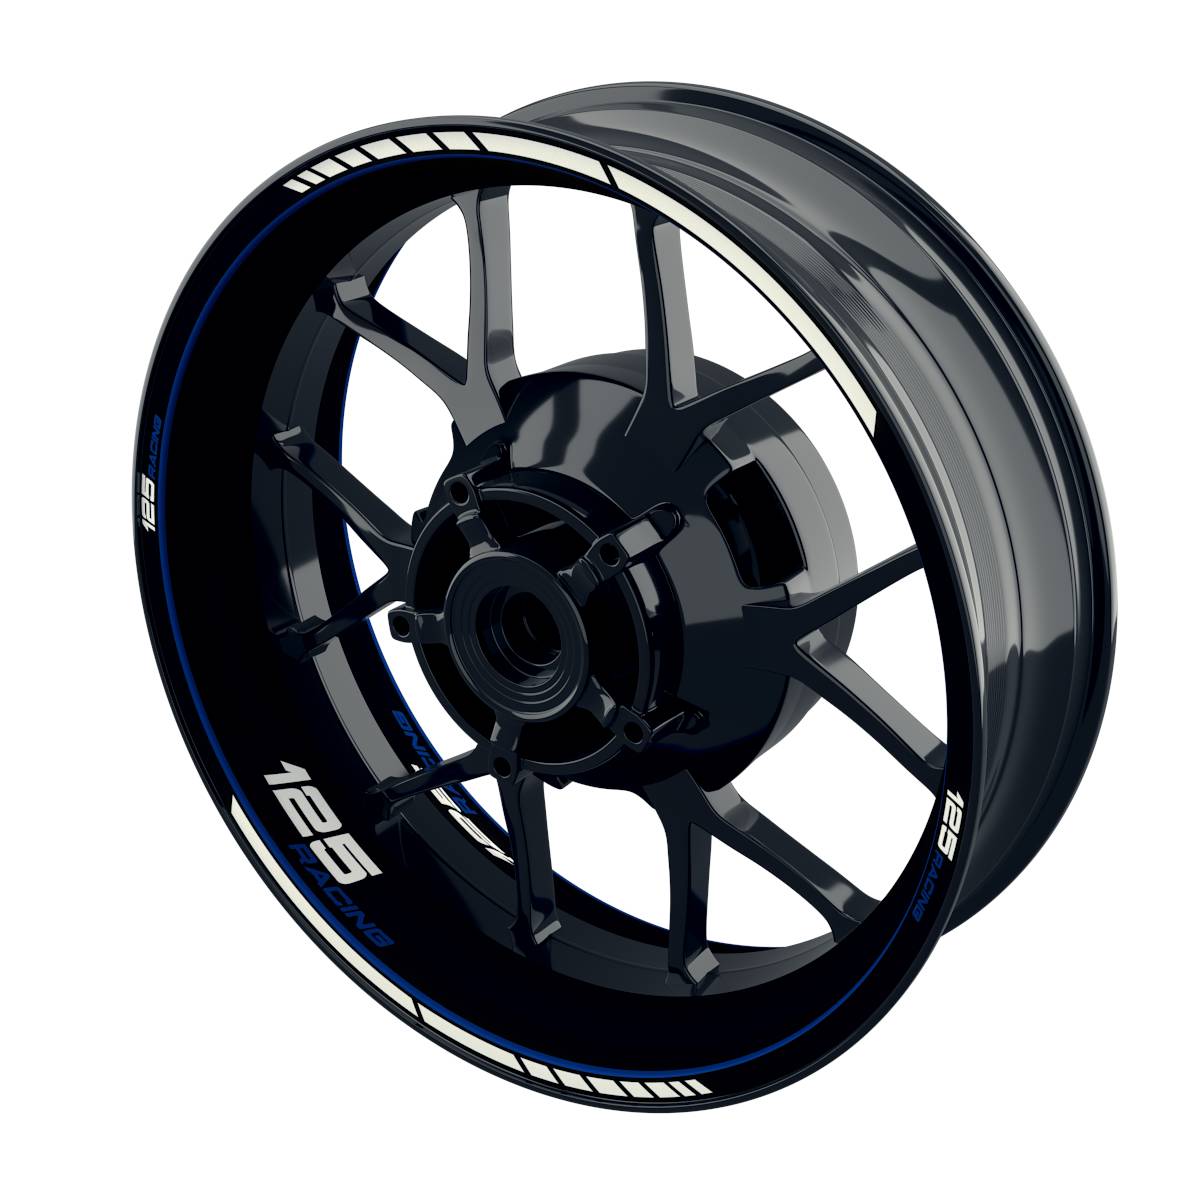 125 Racing Rim Decals Clean Wheelsticker Premium